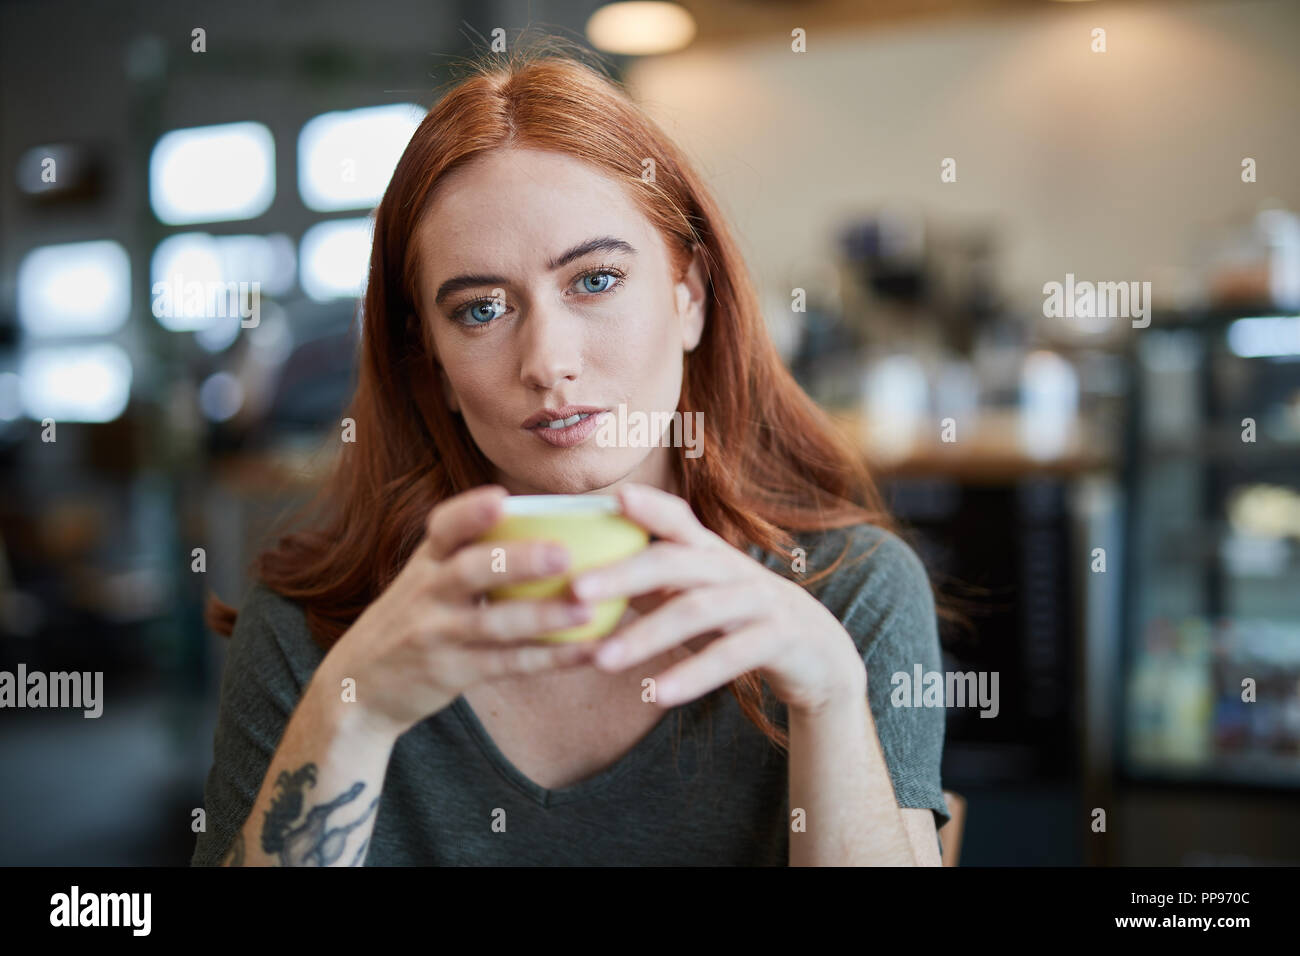 Eine einzelne Frau, sitzt in einem City Cafe mit einem heißen Getränk in einem Becher, an Kamera suchen Stockfoto